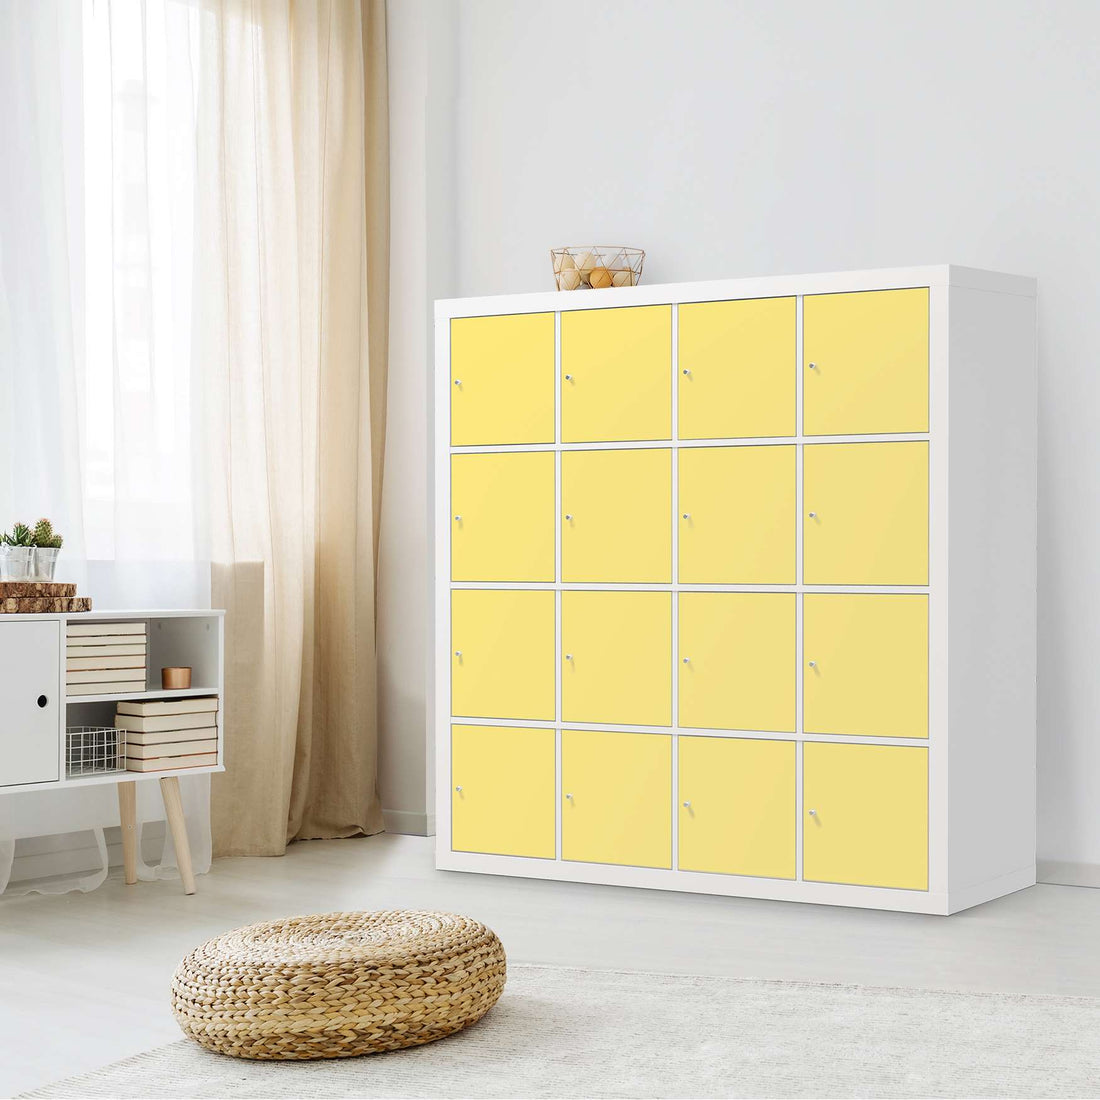 Selbstklebende Folie Gelb Light - IKEA Expedit Regal 16 Türen - Wohnzimmer